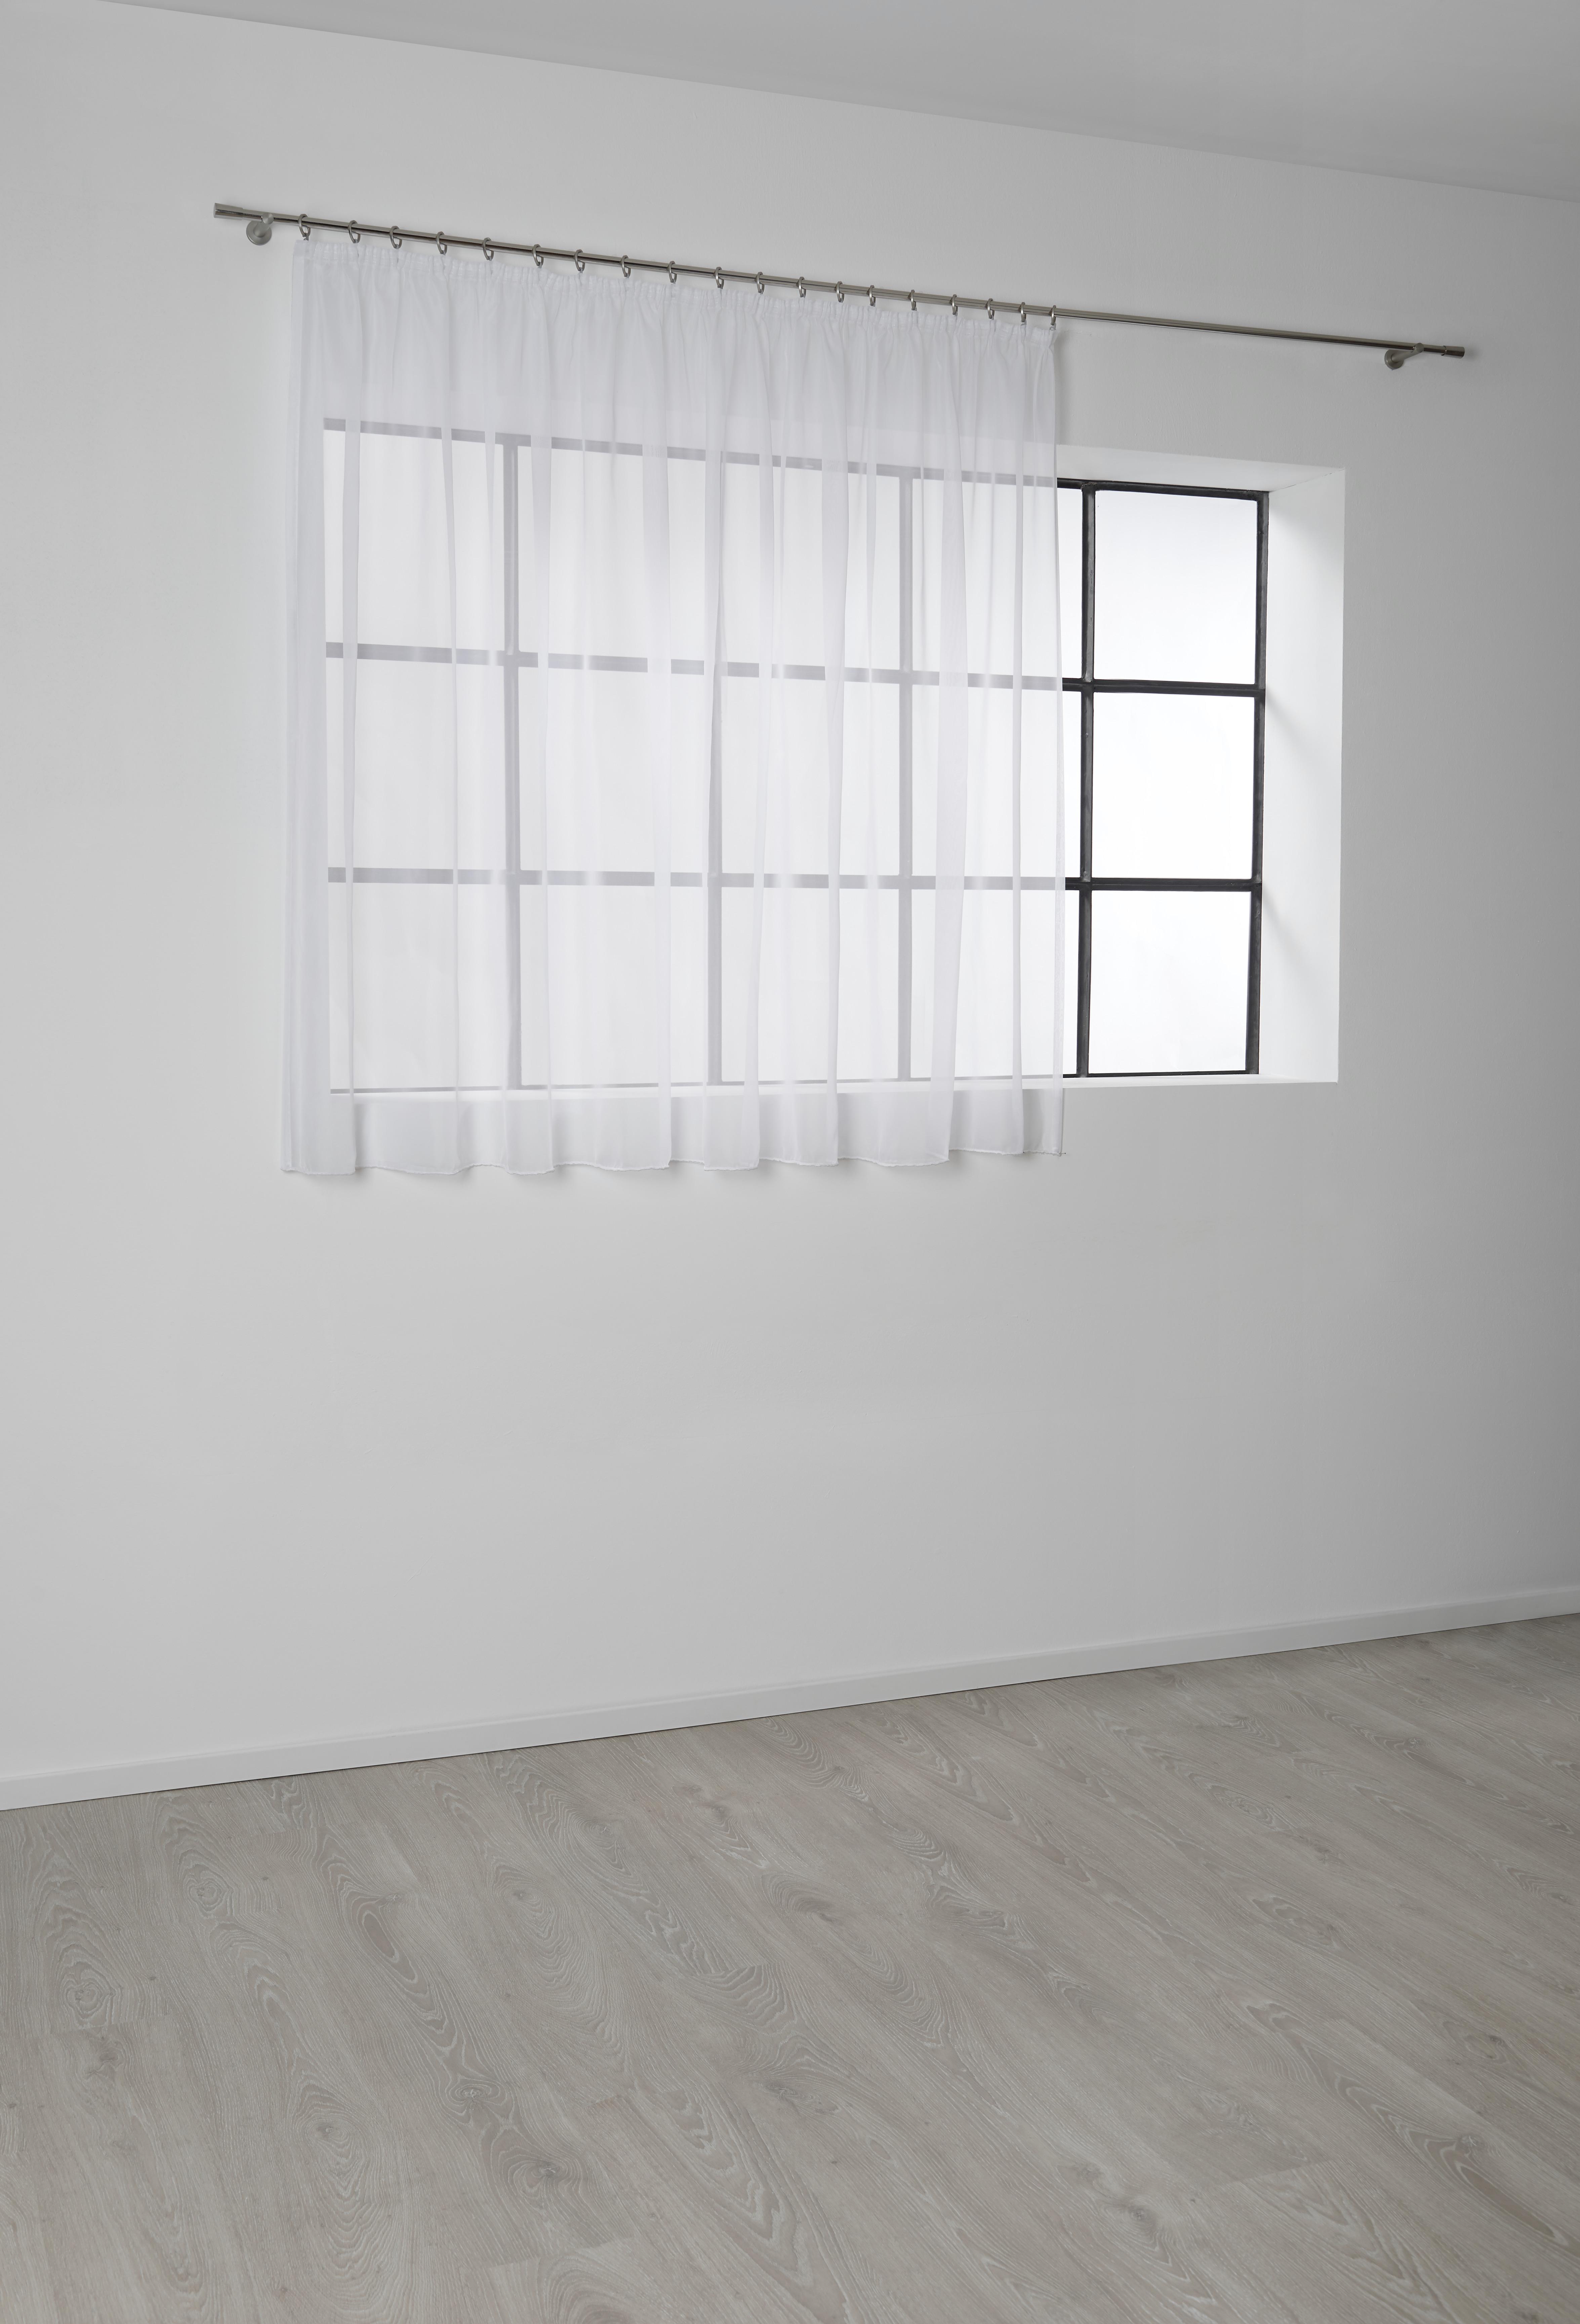 Készfüggöny Anna 300/145 - Fehér, konvencionális, Textil (300/145cm) - Based